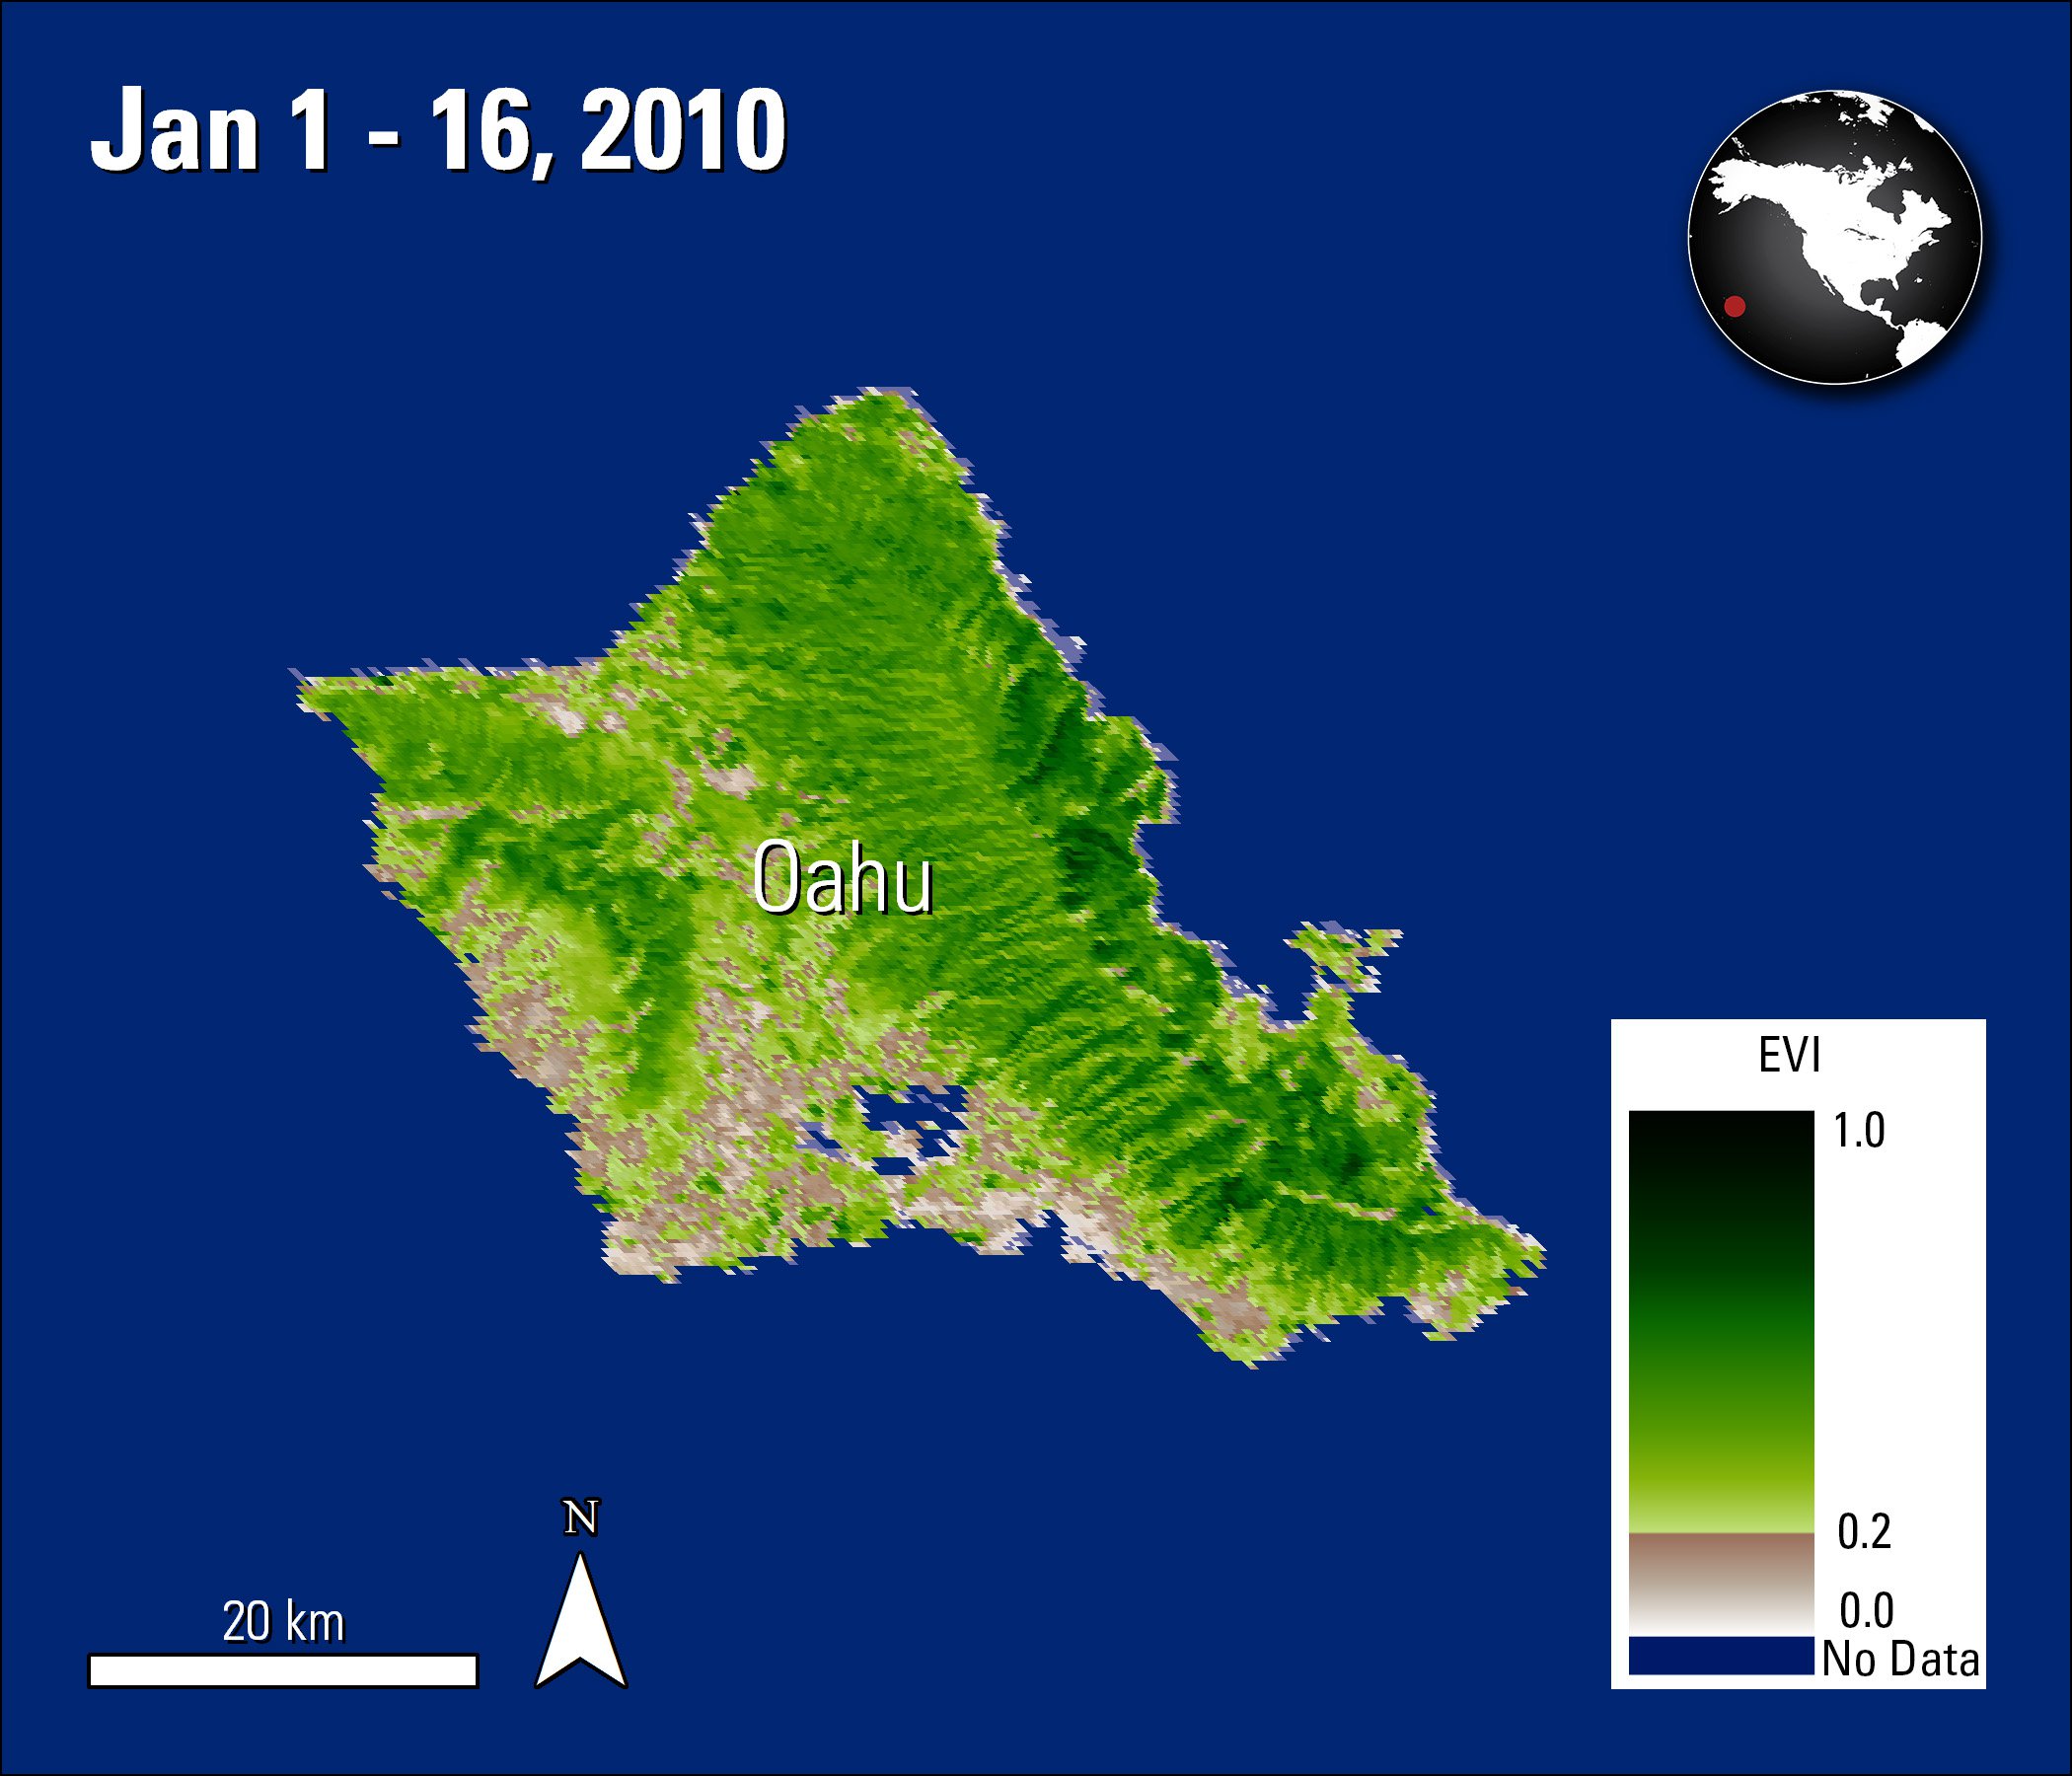 Terra MODIS EVI data over Oahu, Hawaii, United States, acquired January 1, 2010.